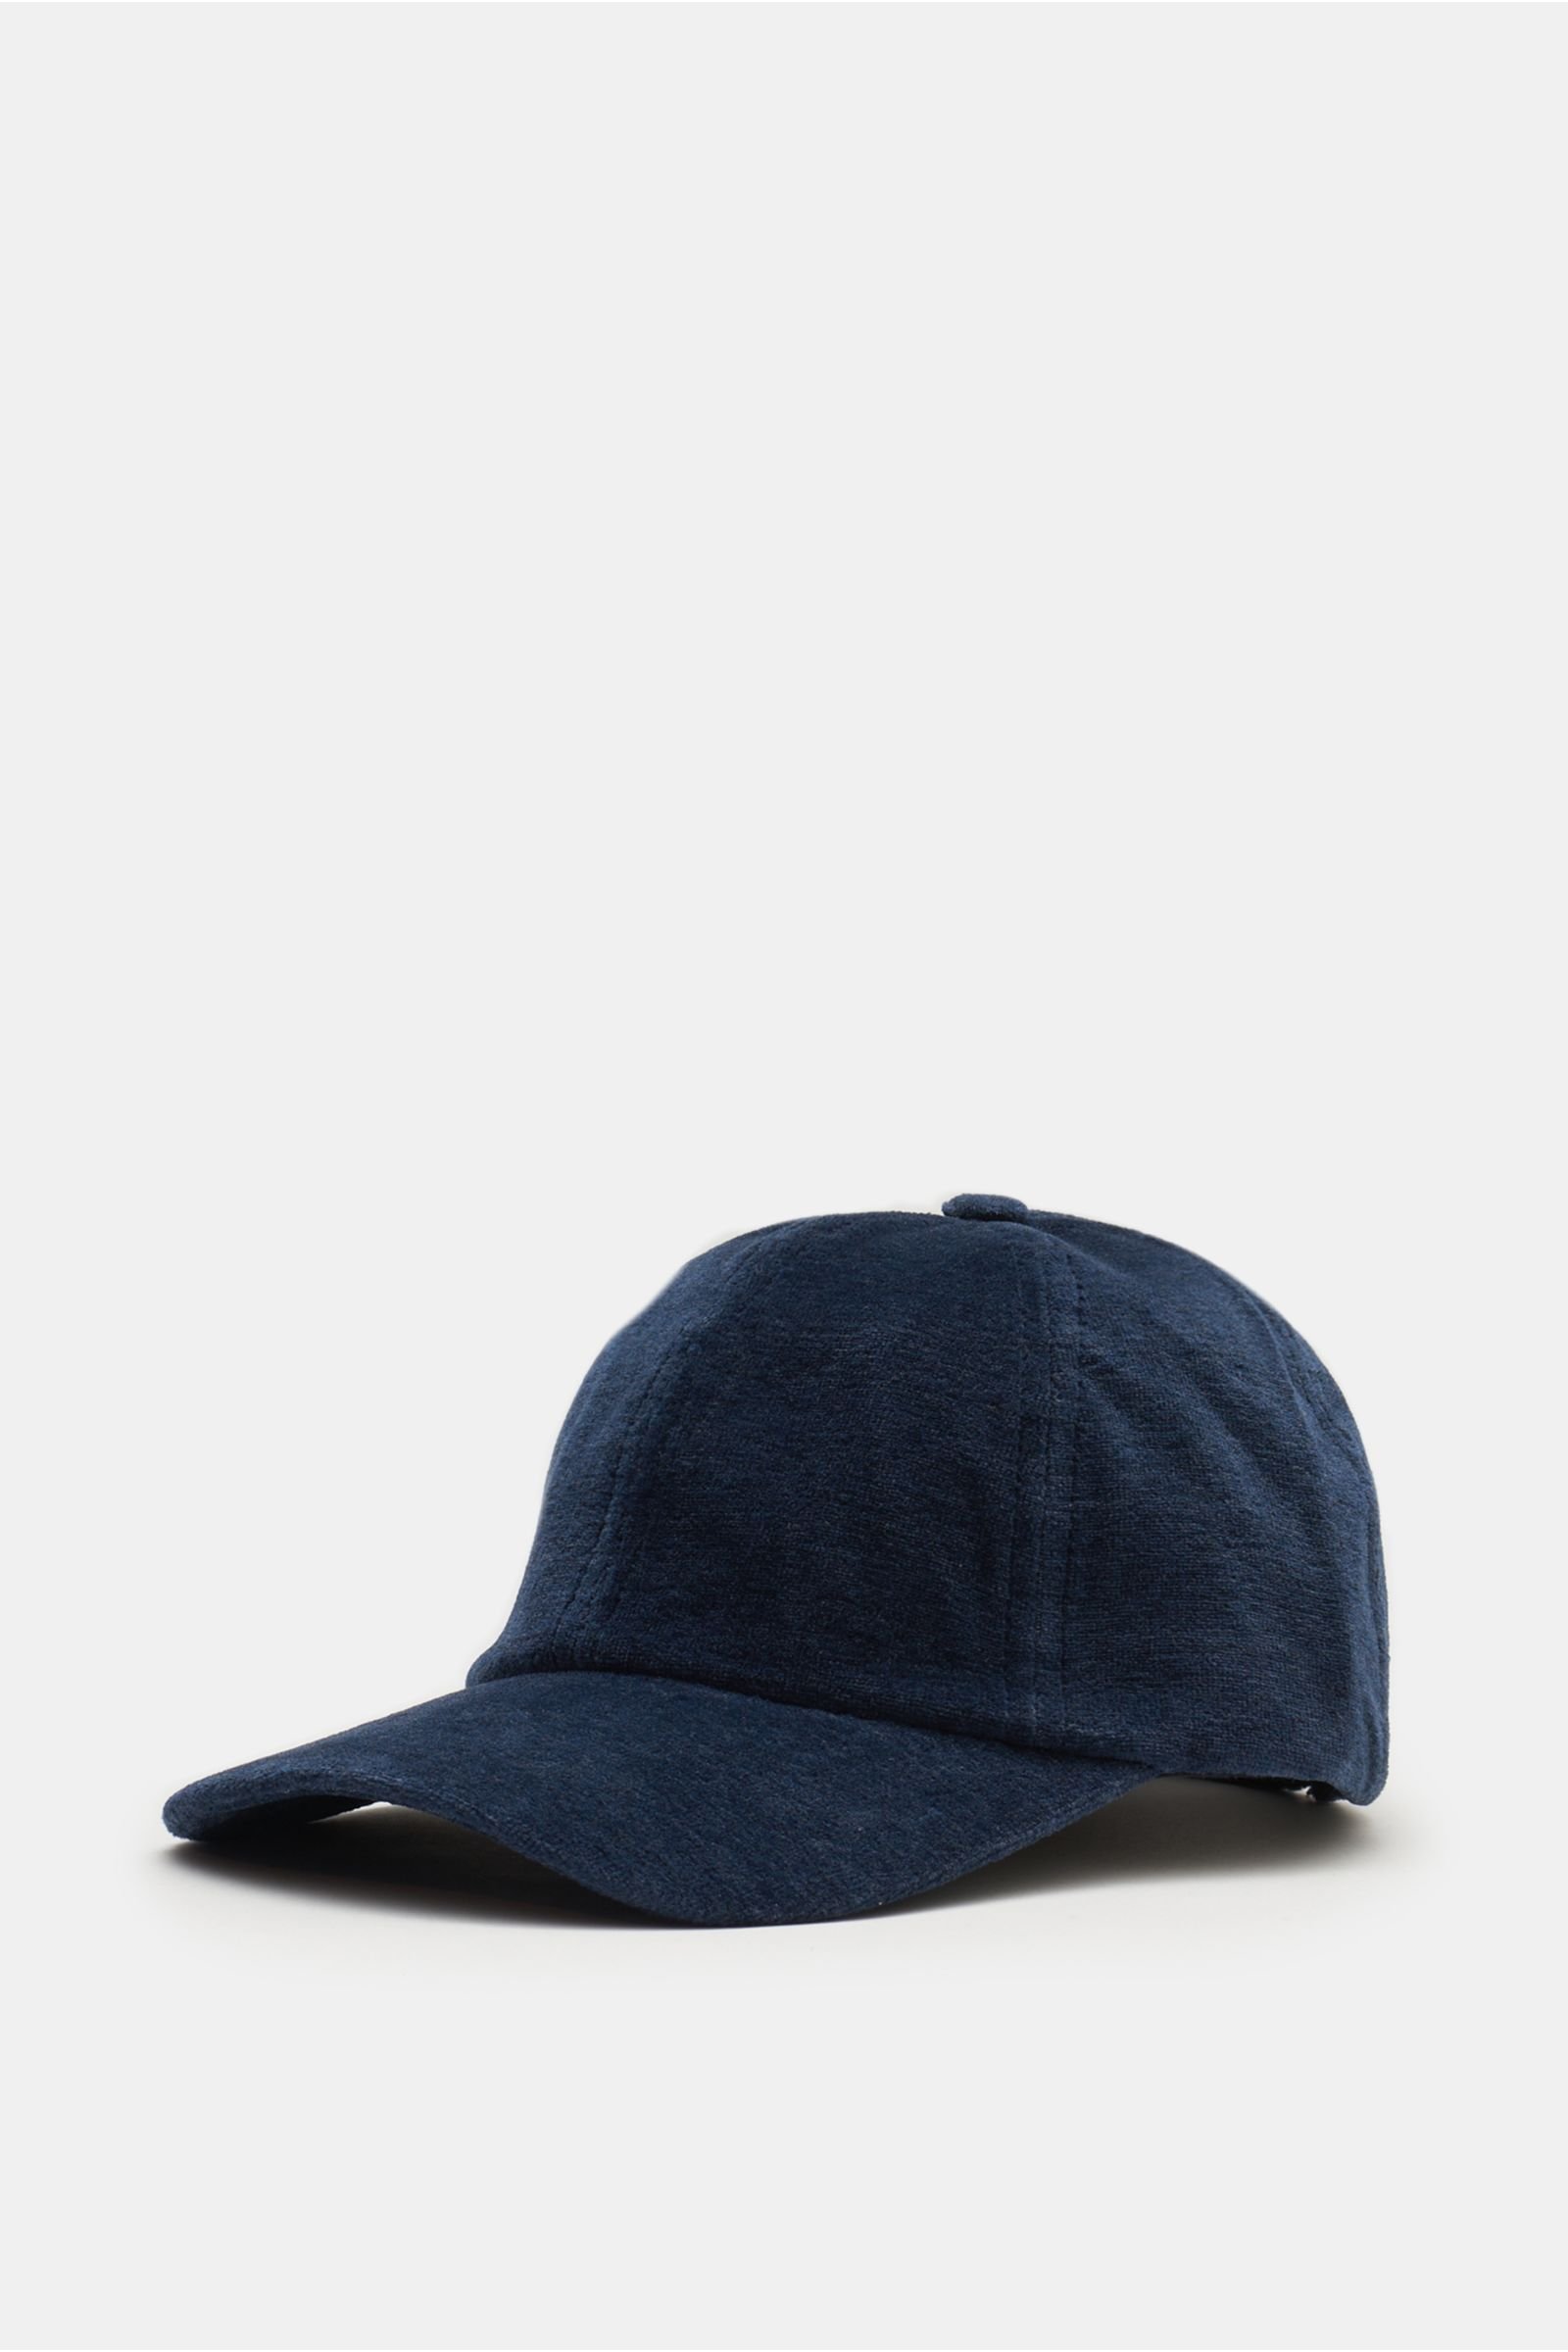 Baseball cap 'Velvet' dark blue